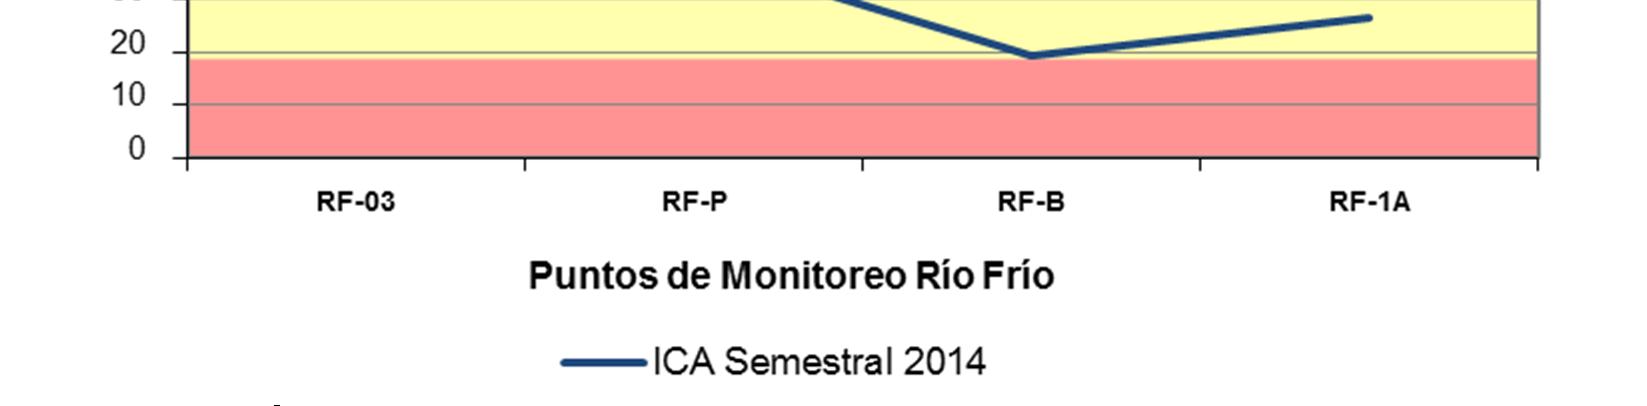 Río Frío contempla en su recorrido cuatro puntos de monitoreo (RF-03 Estación La Esperanza, RF-P Estación El Pórtico, RF-B Estación El Caucho y RF-1A Estación Caneyes) y